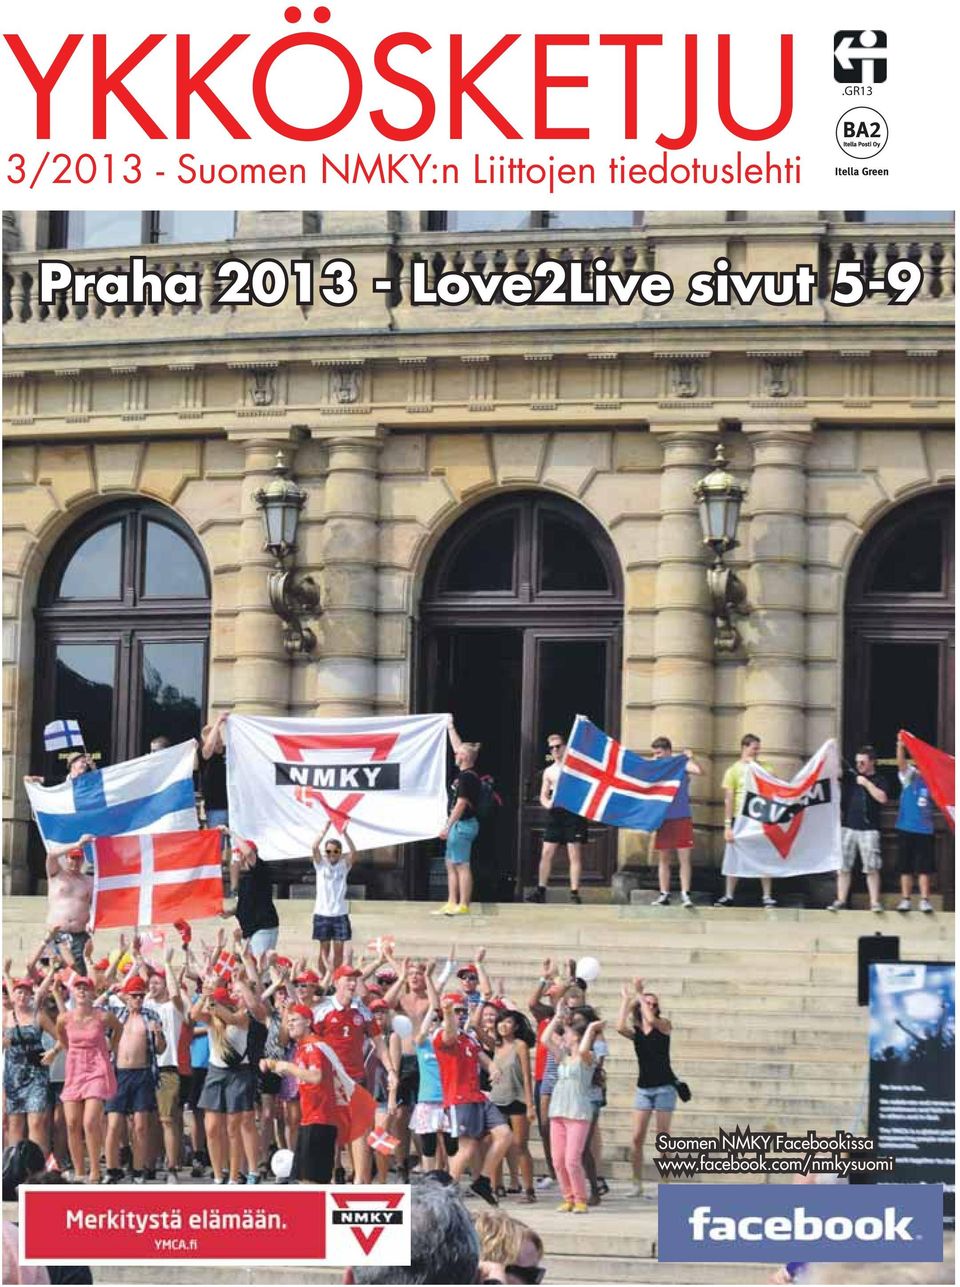 Liittojen tiedotuslehti Praha 2013 -